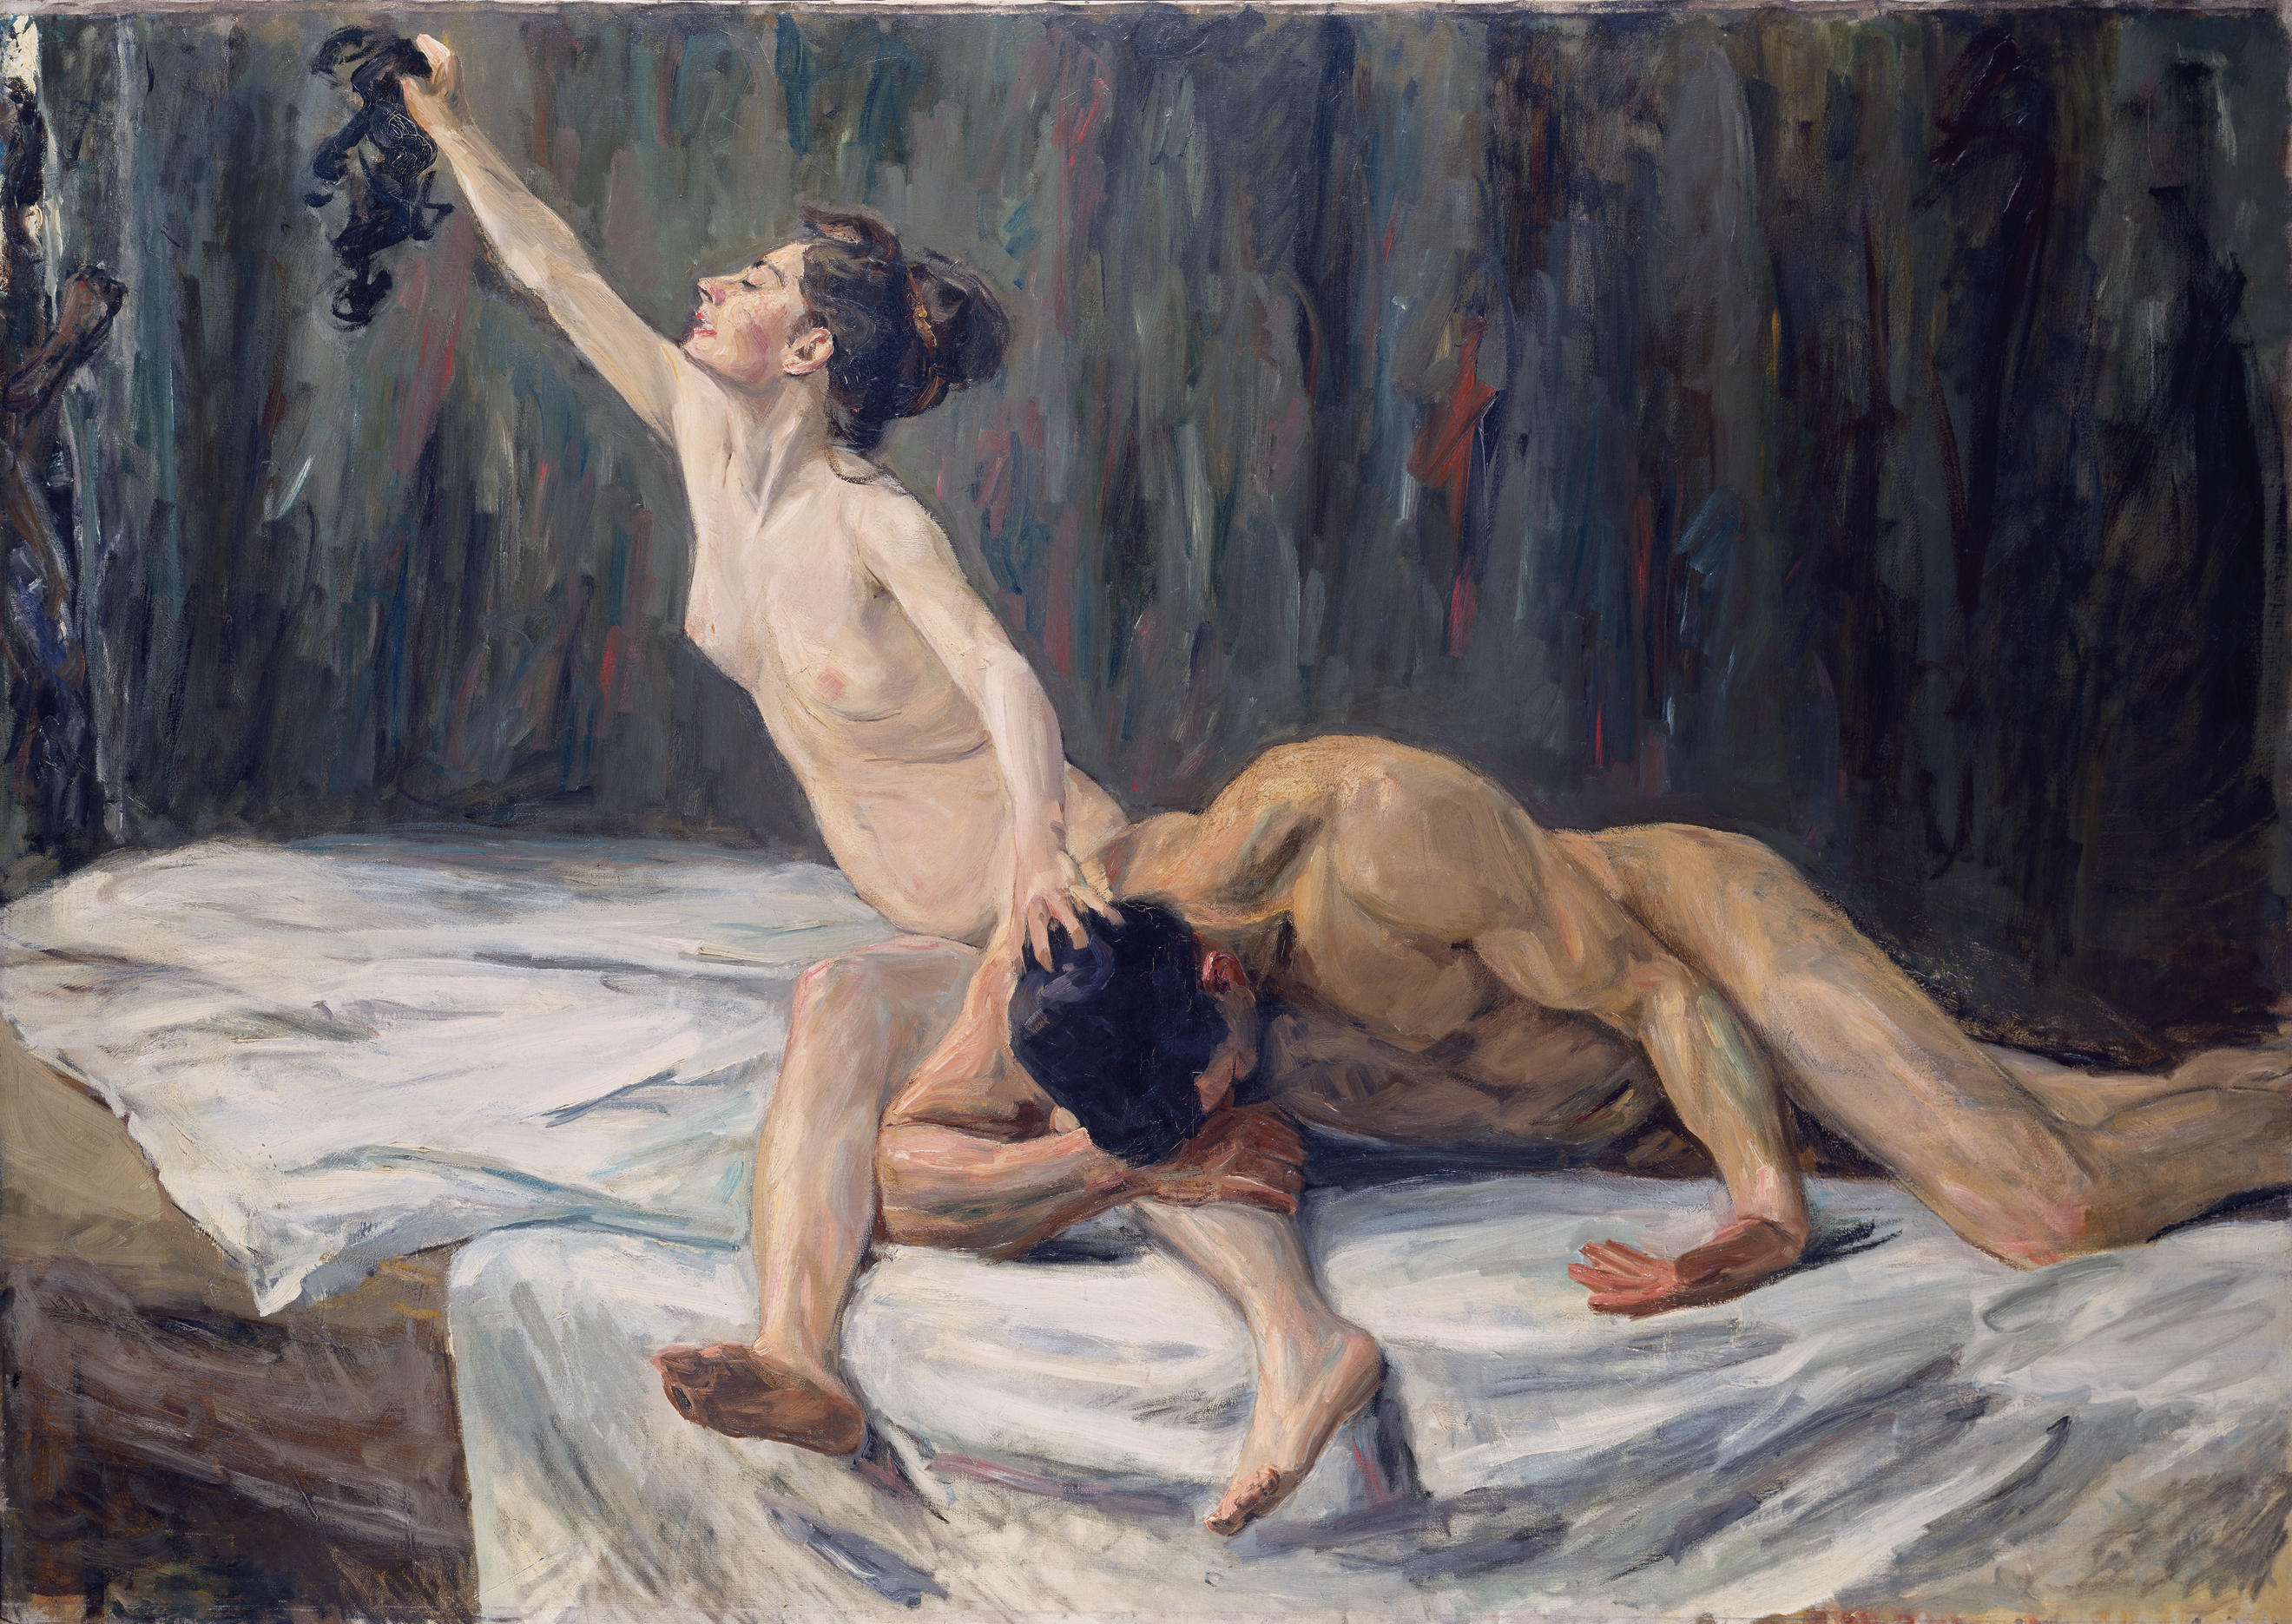 Samson și Dalila by Max Liebermann - 1902 - 151.2 x 212.0 cm 